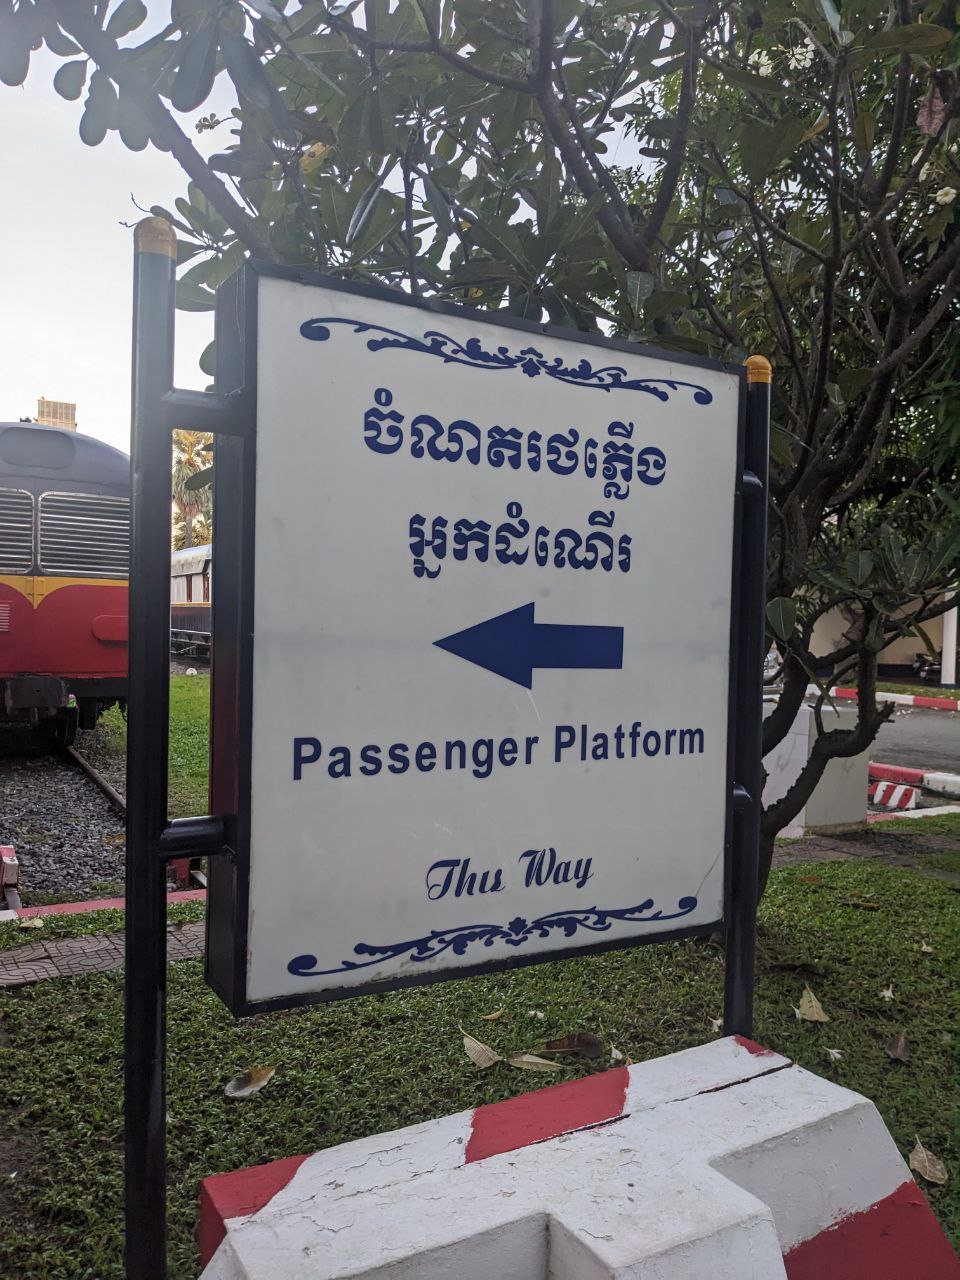 Taking the train in Cambodia